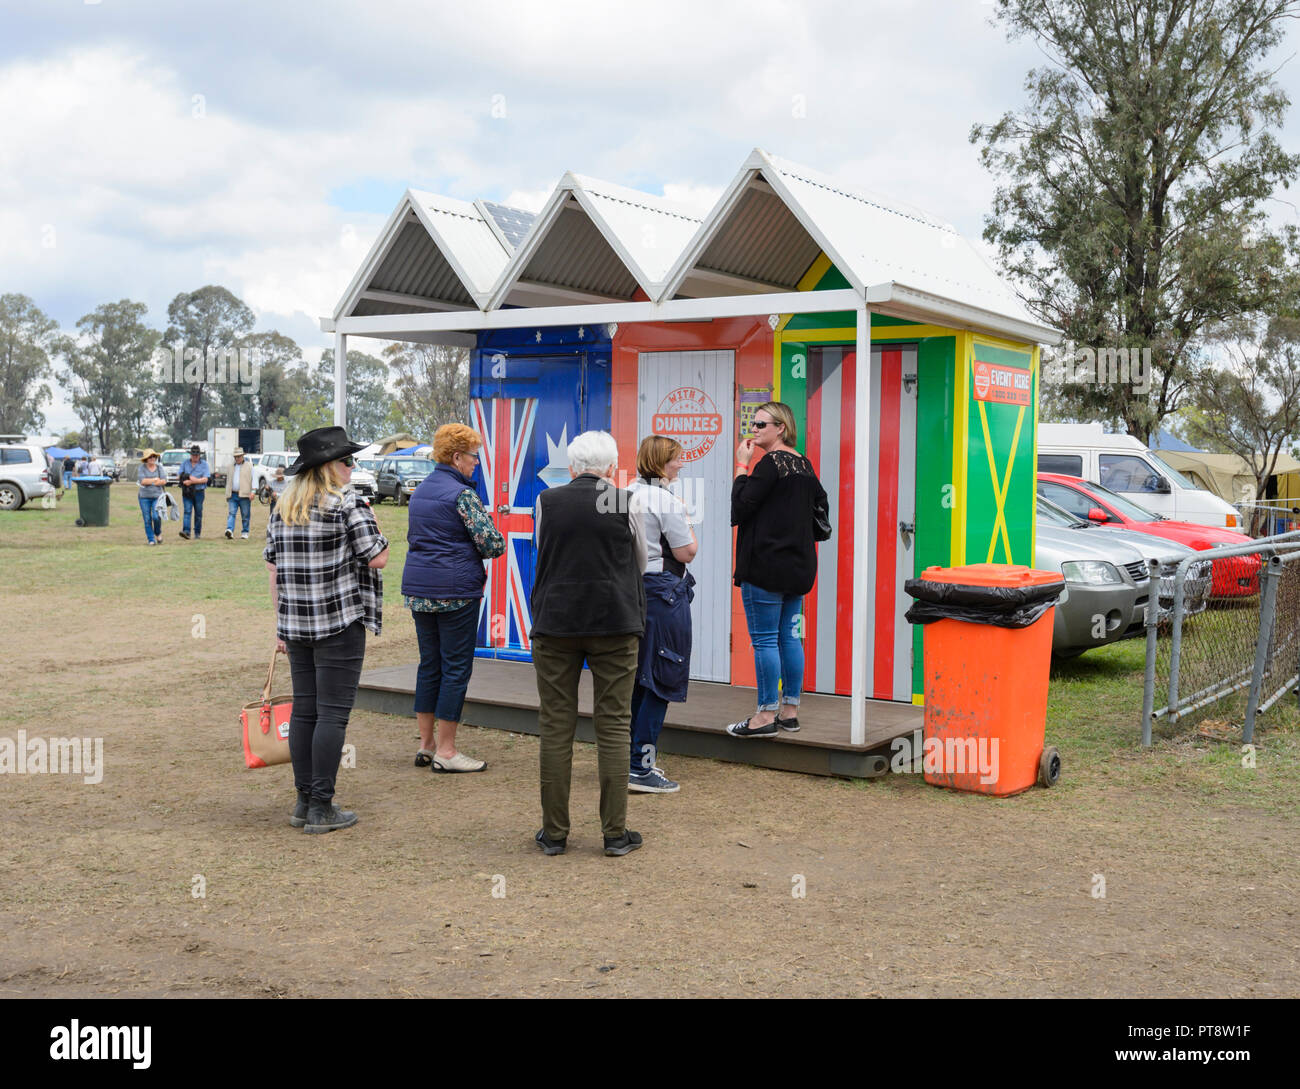 Meine Damen Schlange an ungewöhnlichen öffentlichen Toiletten oder dunnies auf der Suche nach Strand Hütten, Australische Camp Backofen Festival 2018, Millmerran, südlichen Queensland, Stockfoto